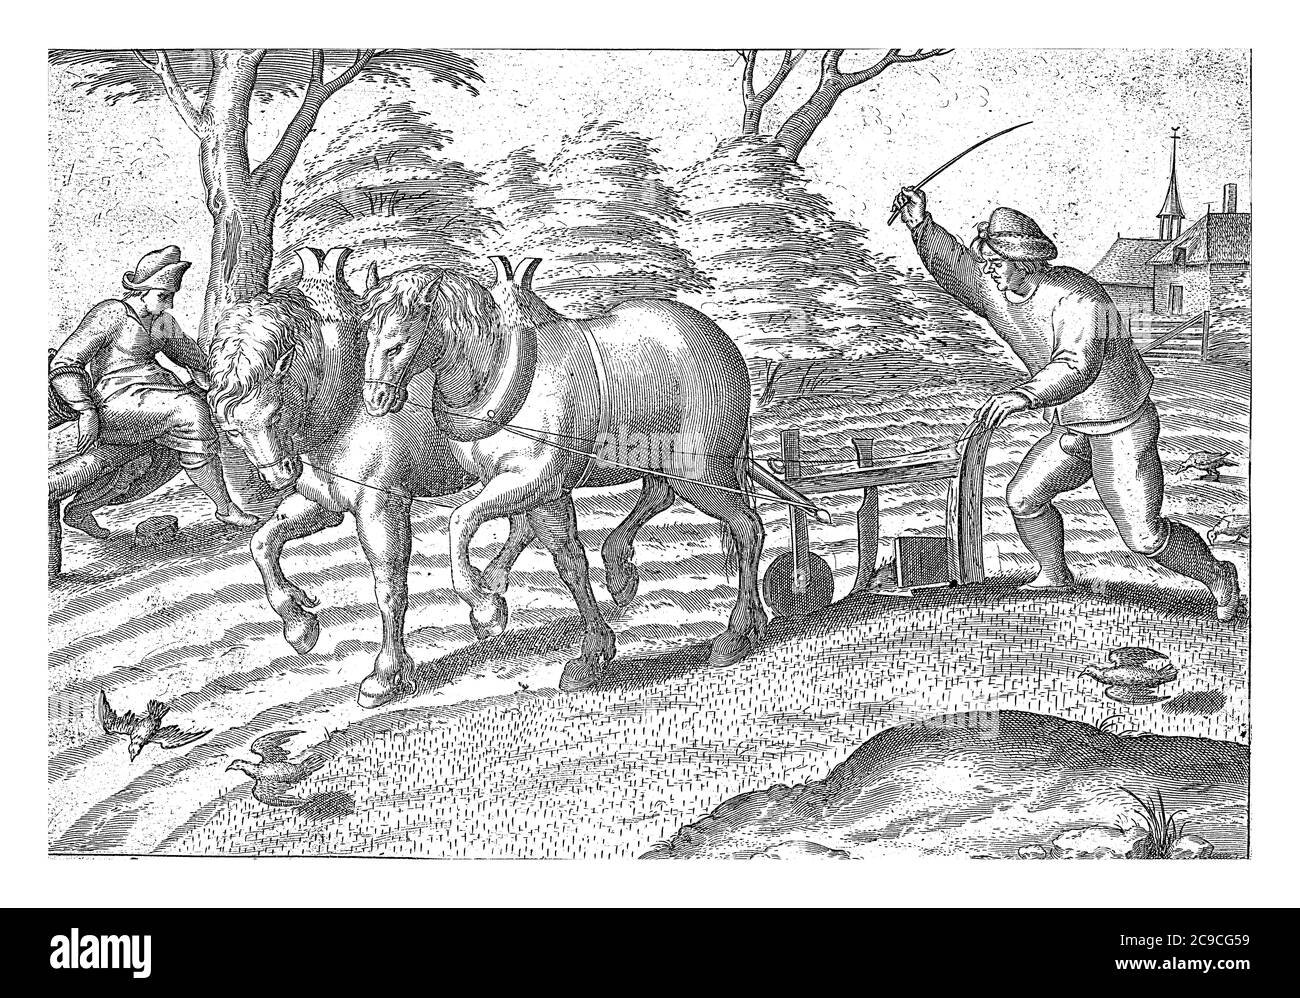 Ein Bauer pflügt das Land und pflügt sein Feld. Mit einer Peitsche treibt er seine Pferde angespannt für die Radcrew an. Vögel picken Körner aus dem gepflügten Land, Jahrgang Stockfoto